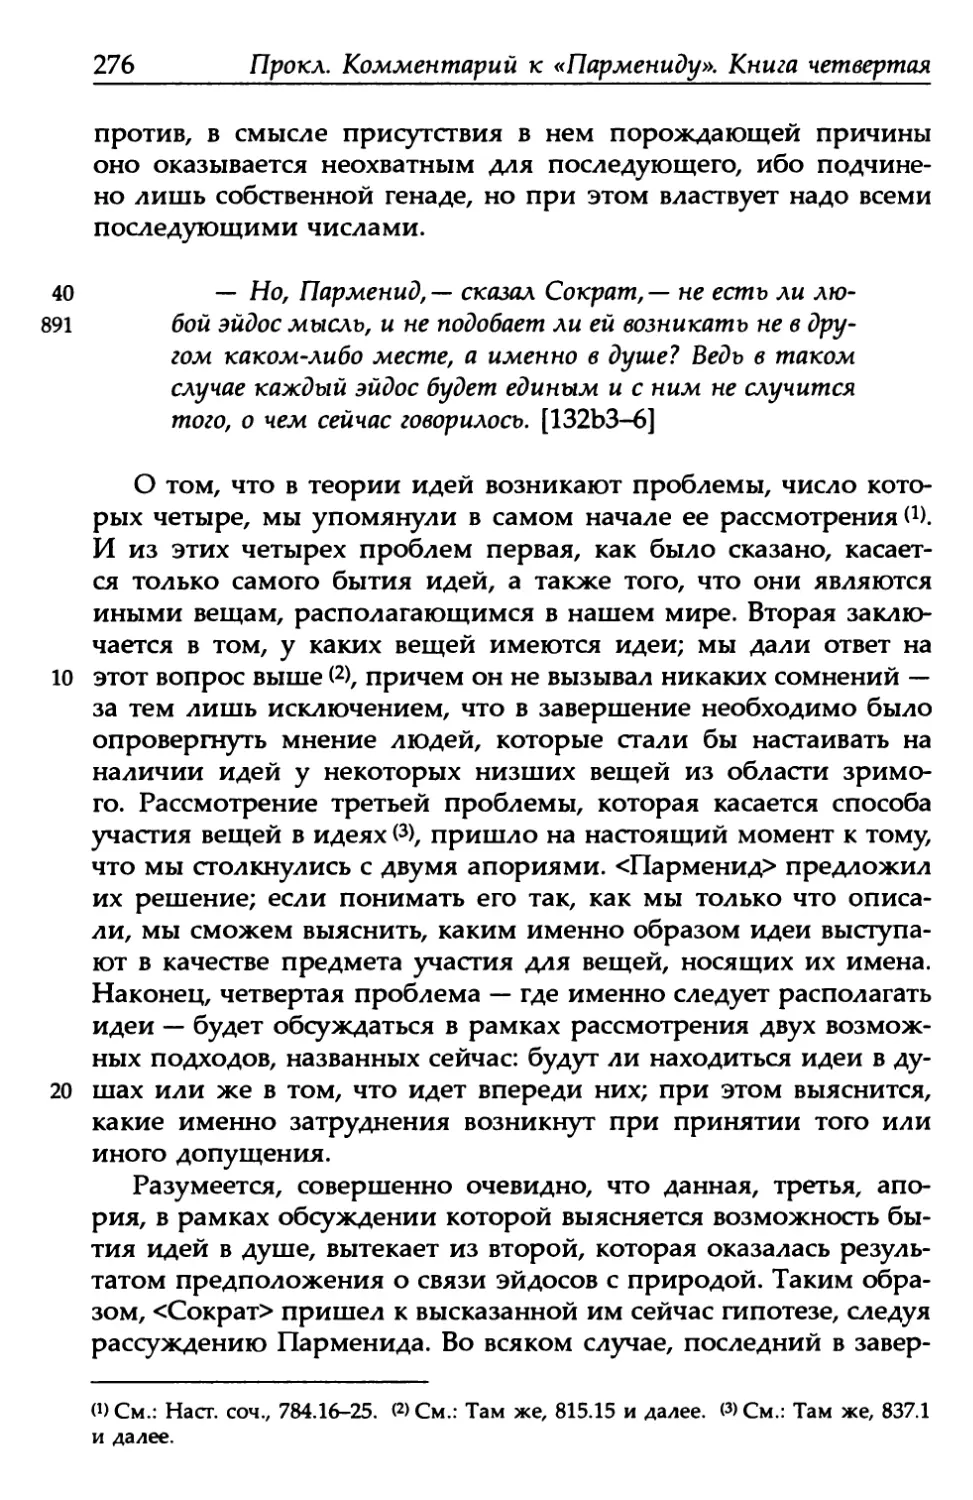 «Парменид», 132b3-6